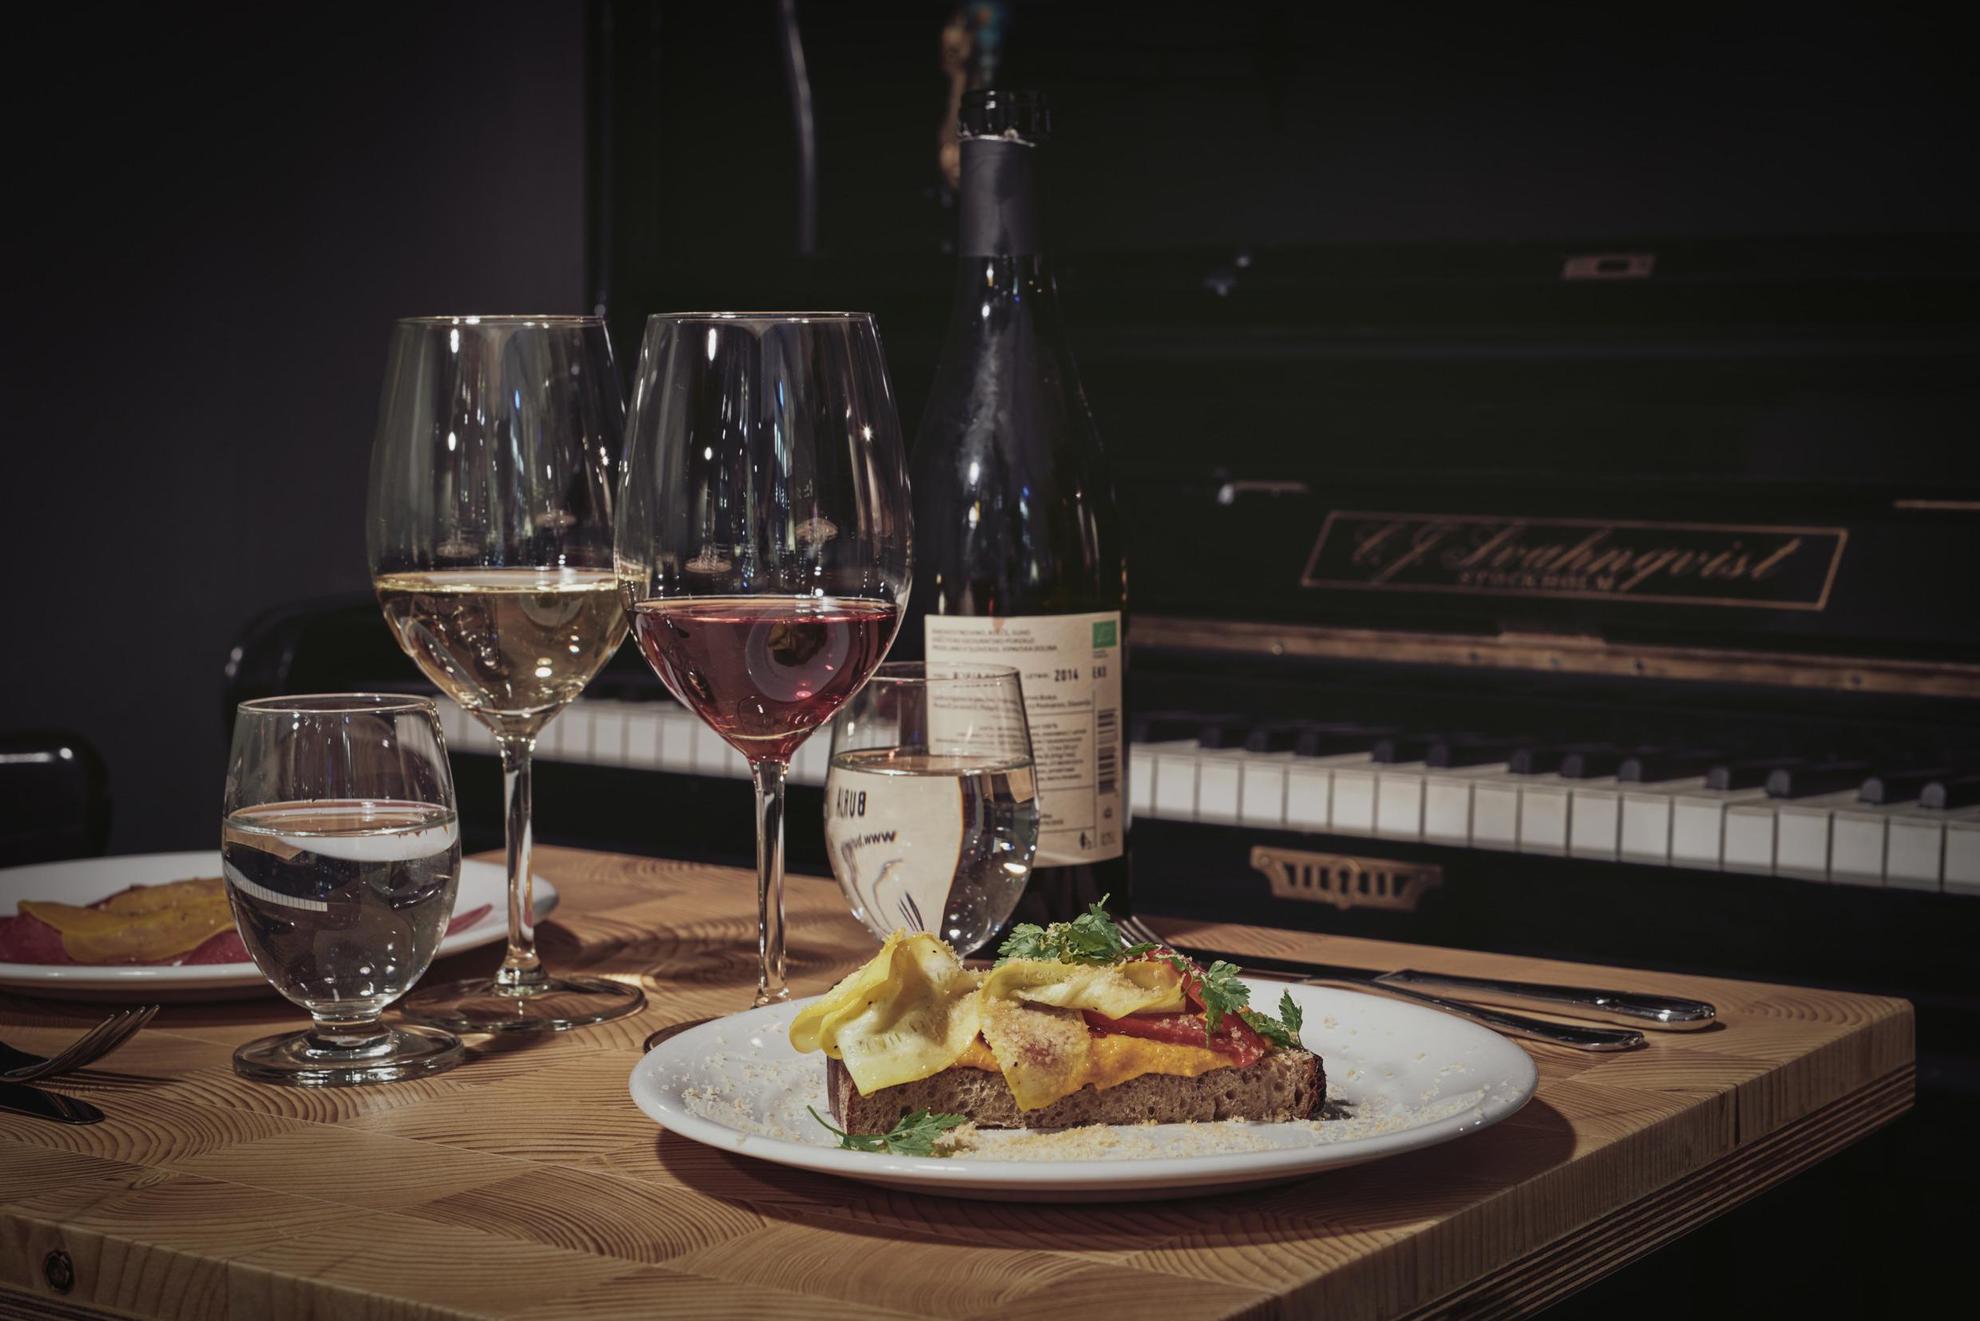 Une table dressée avec une bouteille de vin, deux assiettes de nourriture et deux verres de vin. La table se trouve à côté d'un piano.